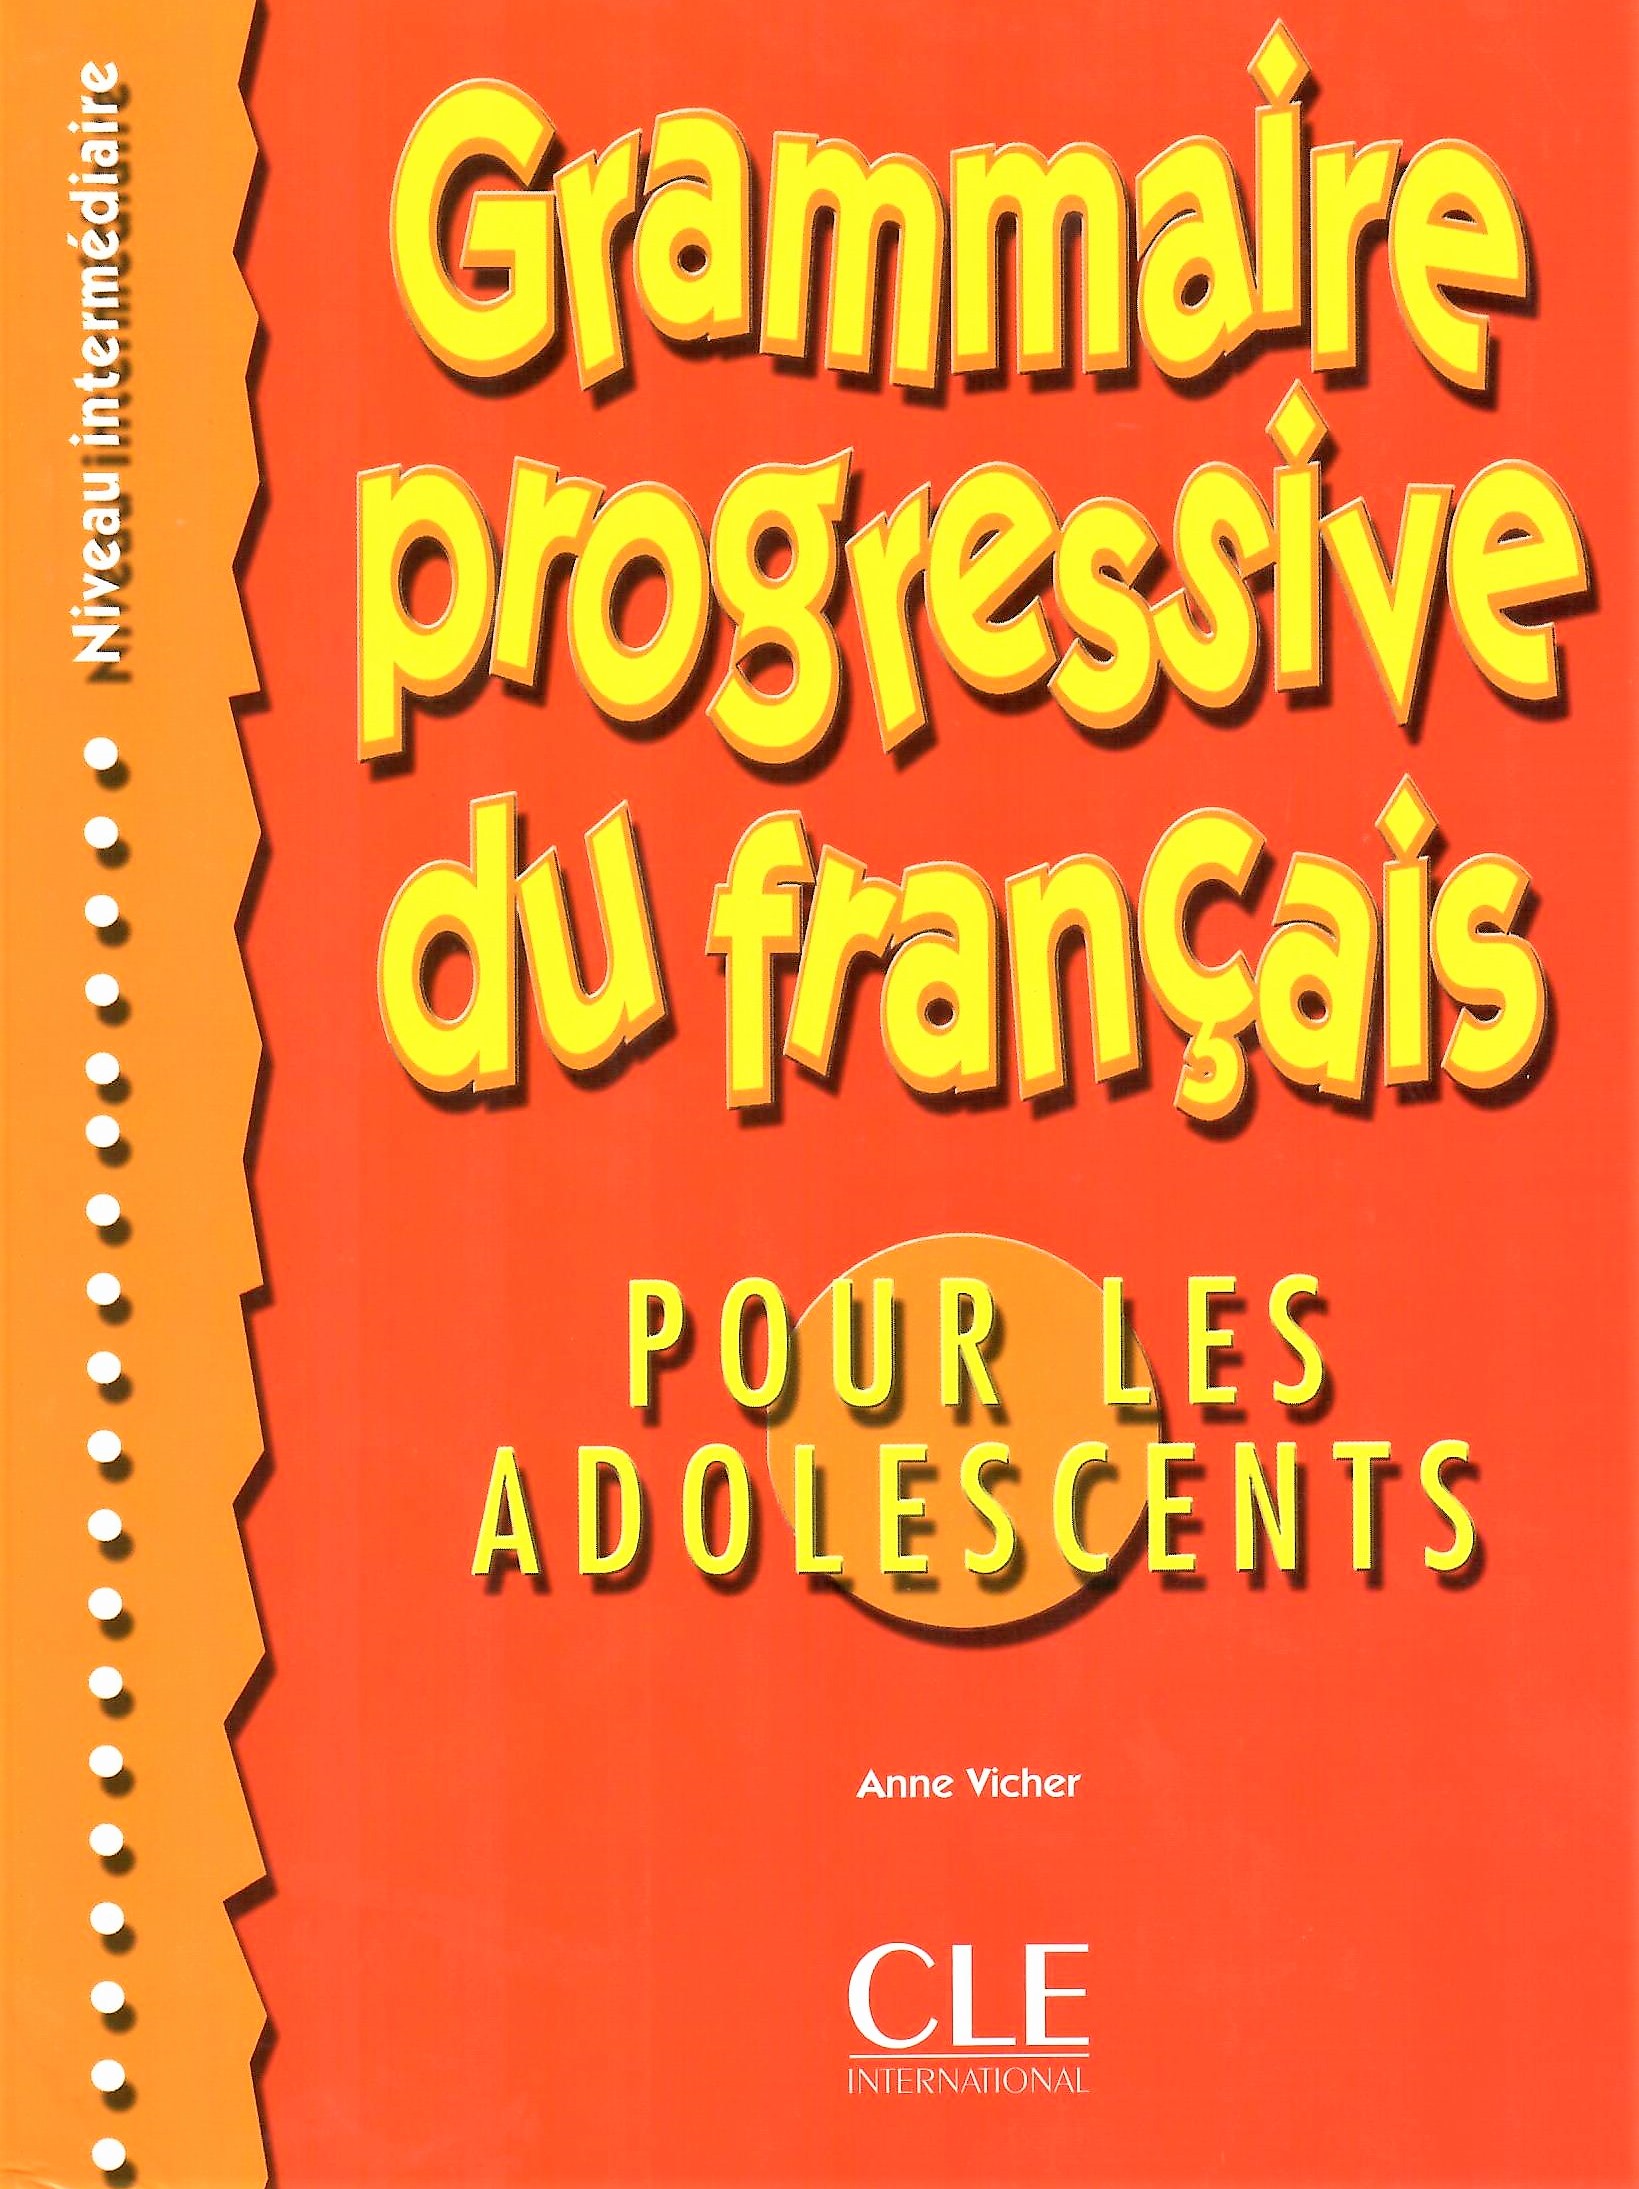 Grammaire Progressive du Francais Intermediaire Les Adolescents Livre / Учебник для подростков